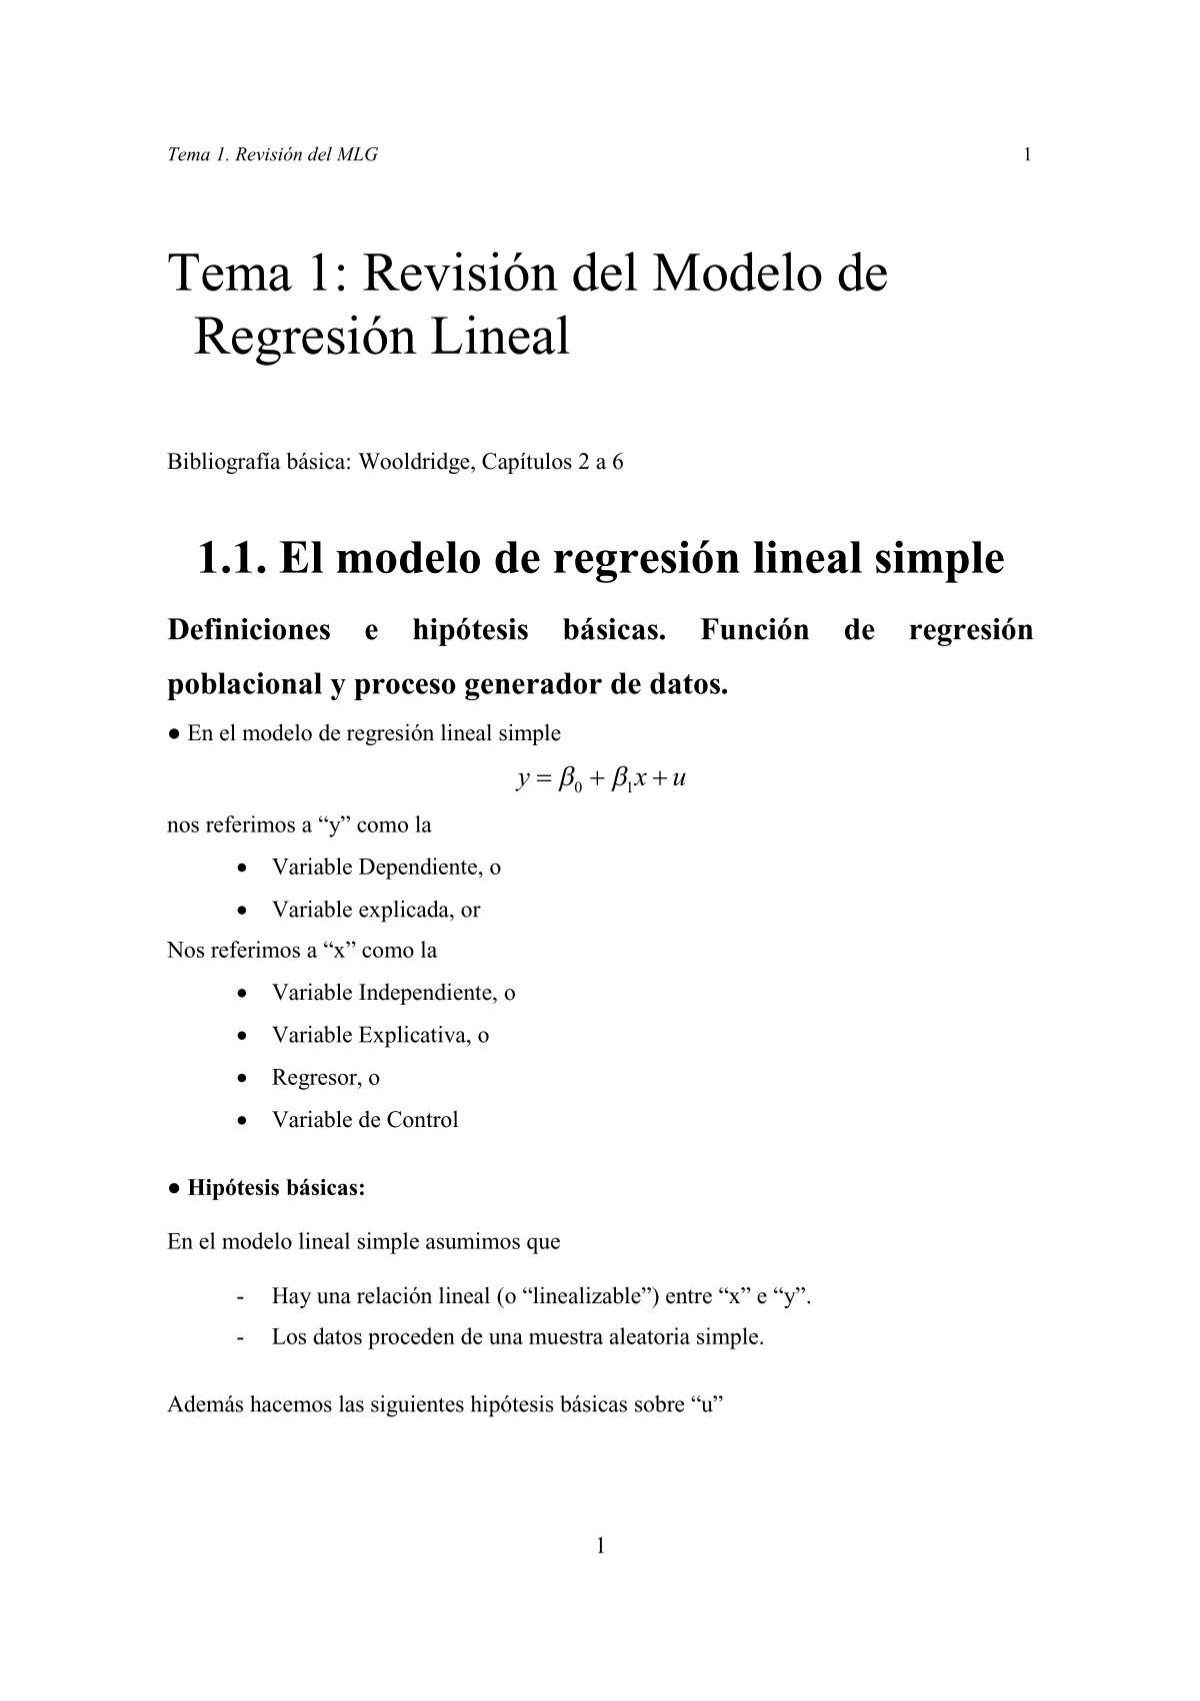 Tema 1: Revisión del Modelo de Regresión Lineal